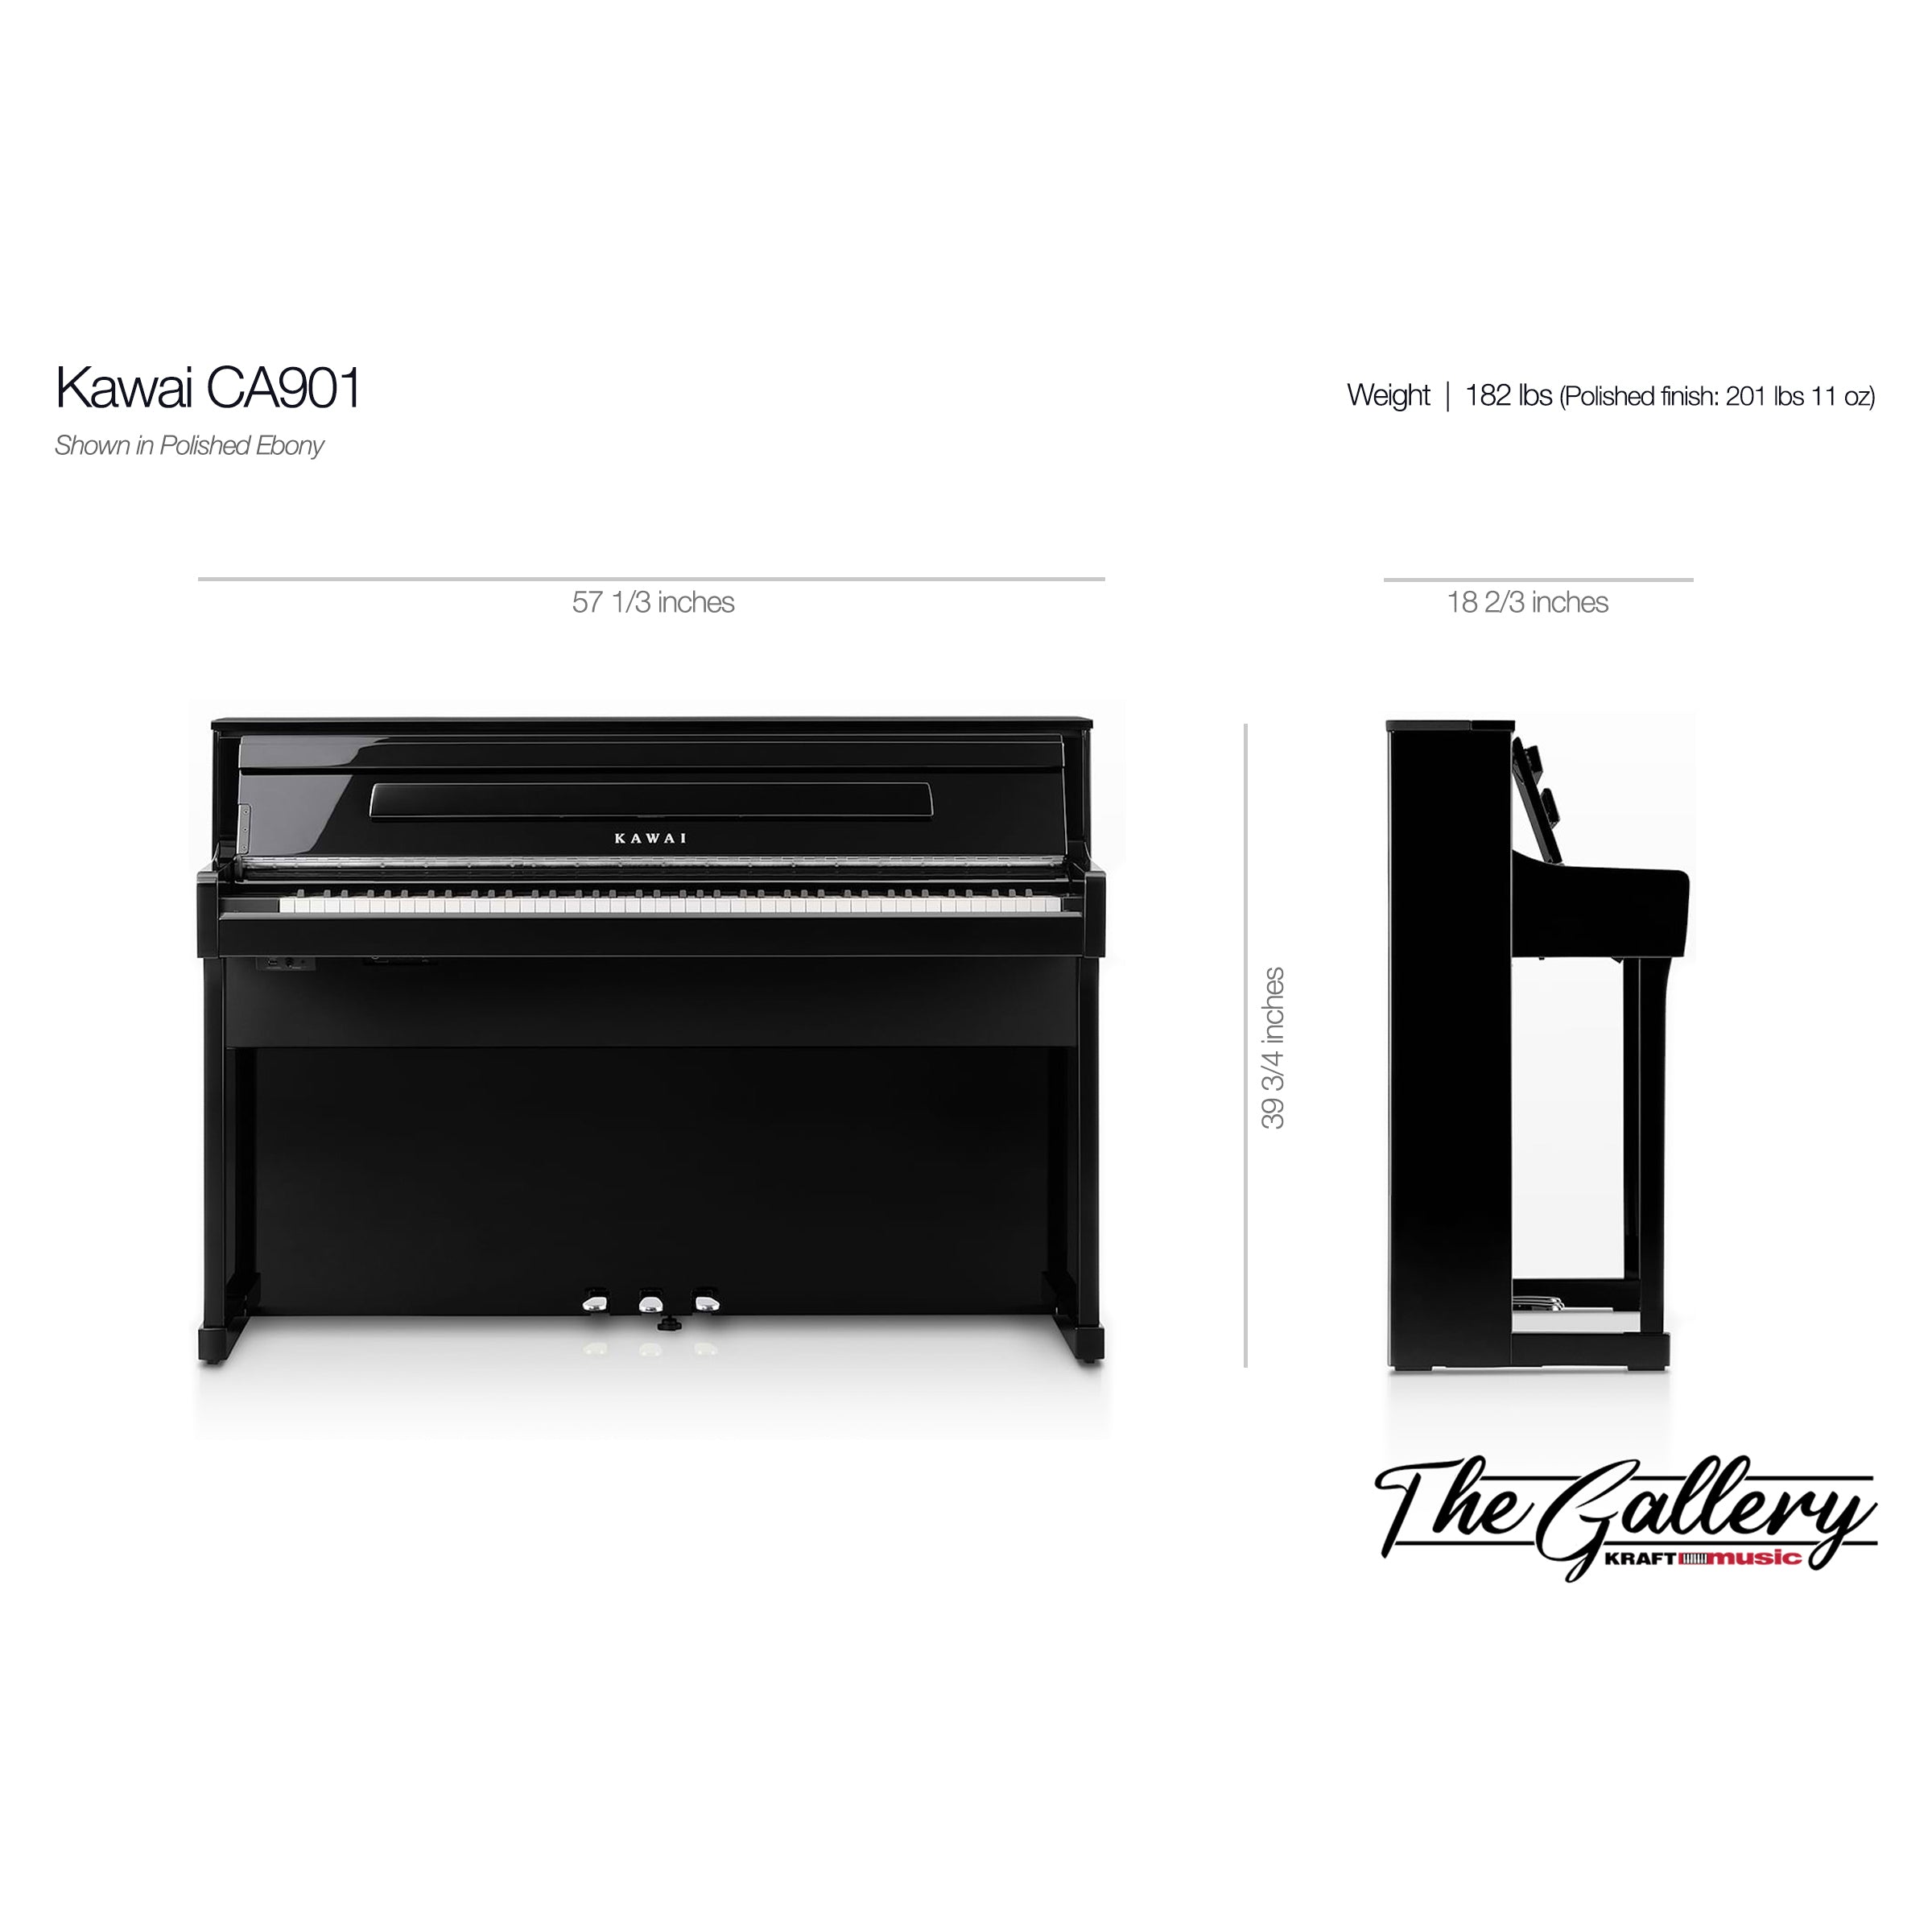 Kawai CA901 Digital Piano - Dimensions